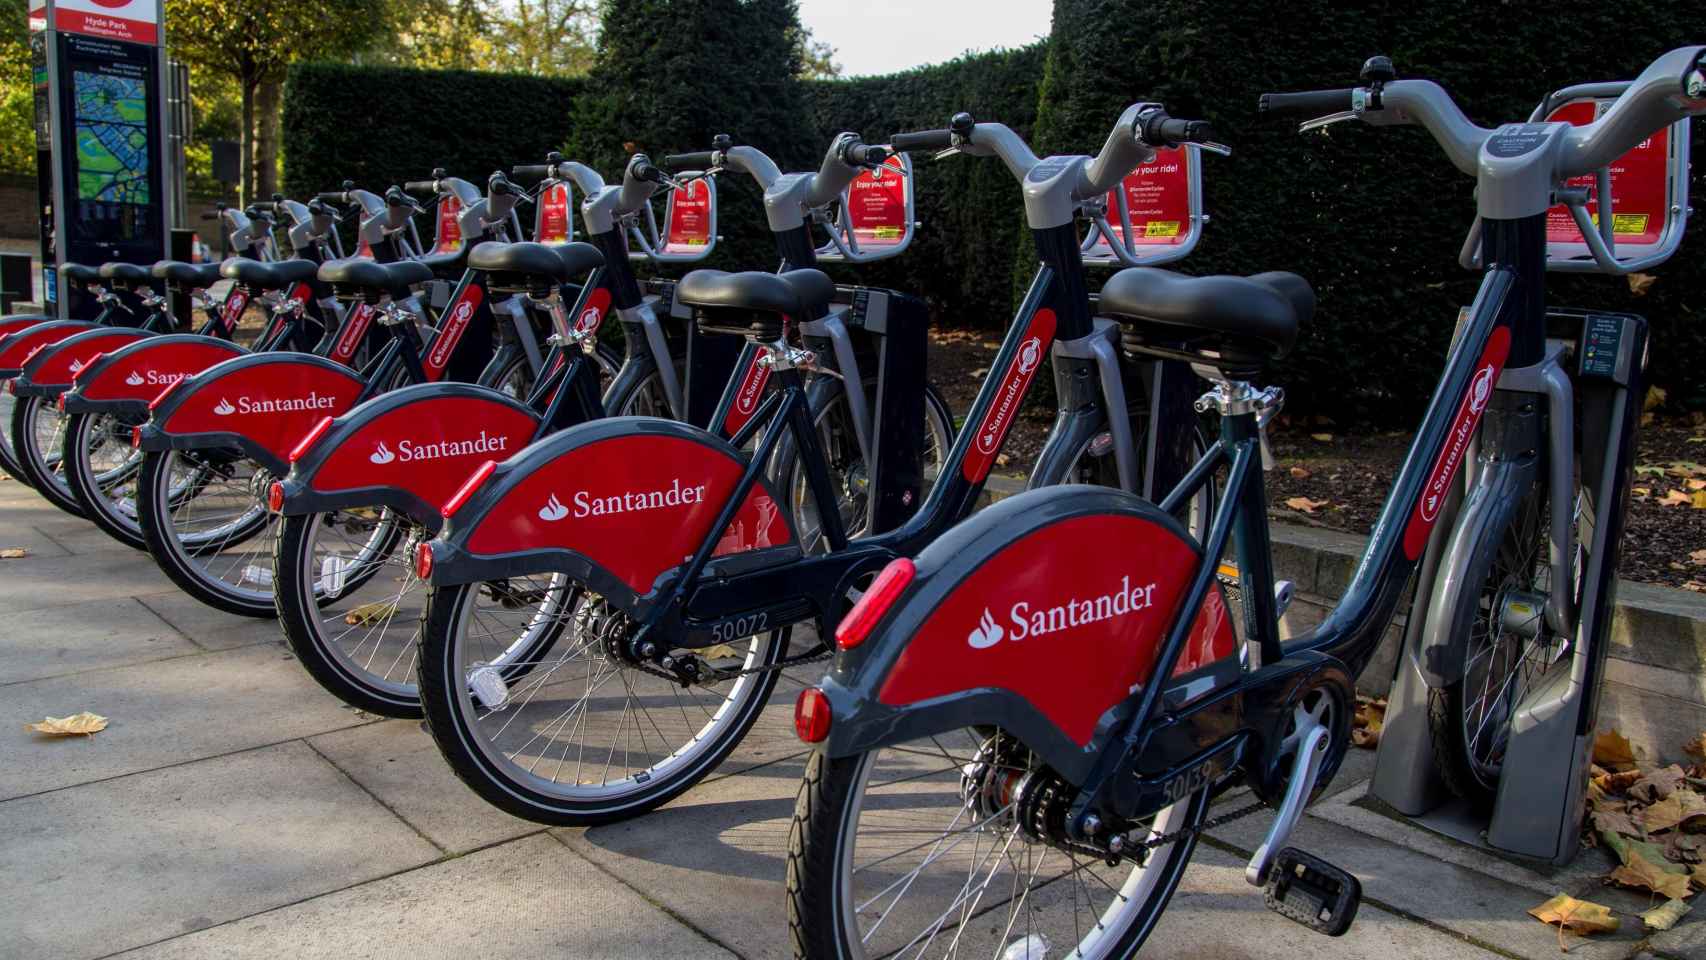 Servicio de Santander Cycles en Reino Unido.